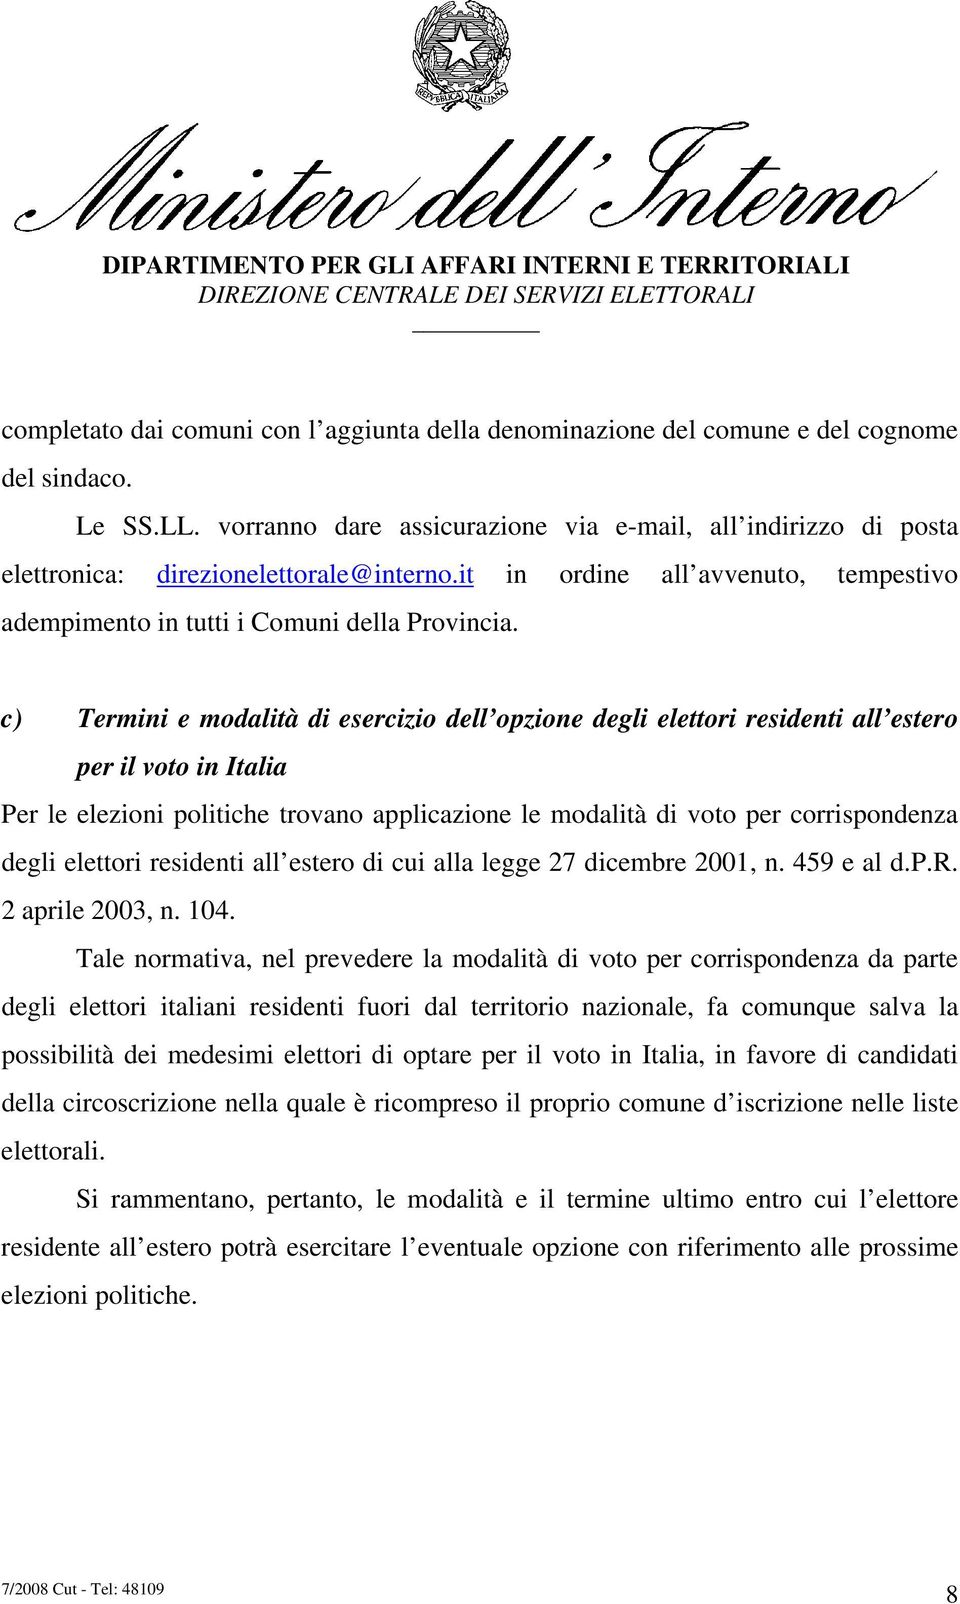 c) Termini e modalità di esercizio dell opzione degli elettori residenti all estero per il voto in Italia Per le elezioni politiche trovano applicazione le modalità di voto per corrispondenza degli